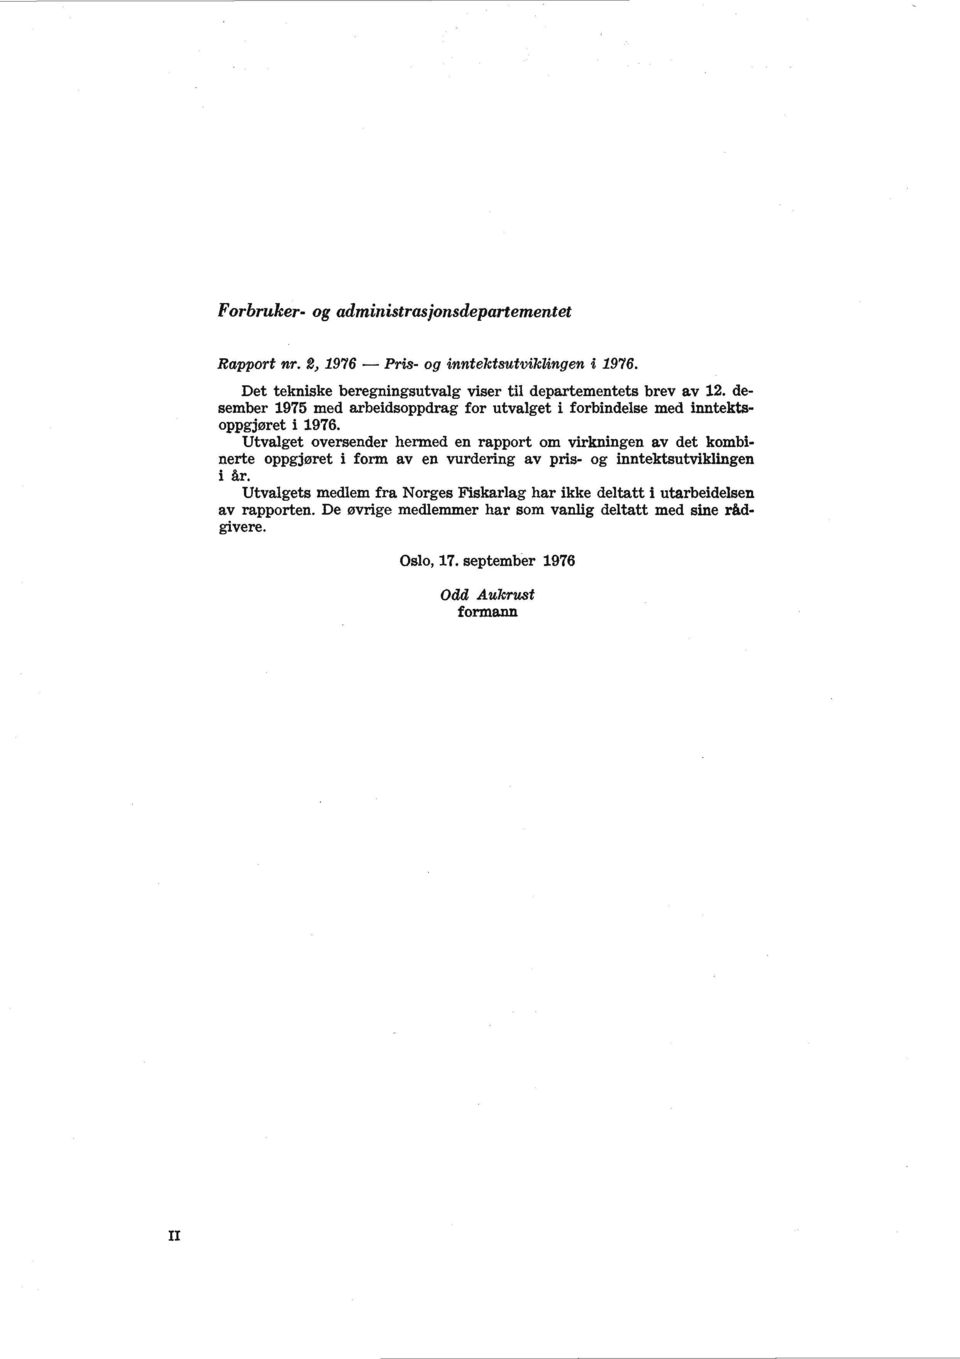 desember 1975 med arbeidsoppdrag for utvalget i forbindelse med inntektsoppgjøret i 1976.